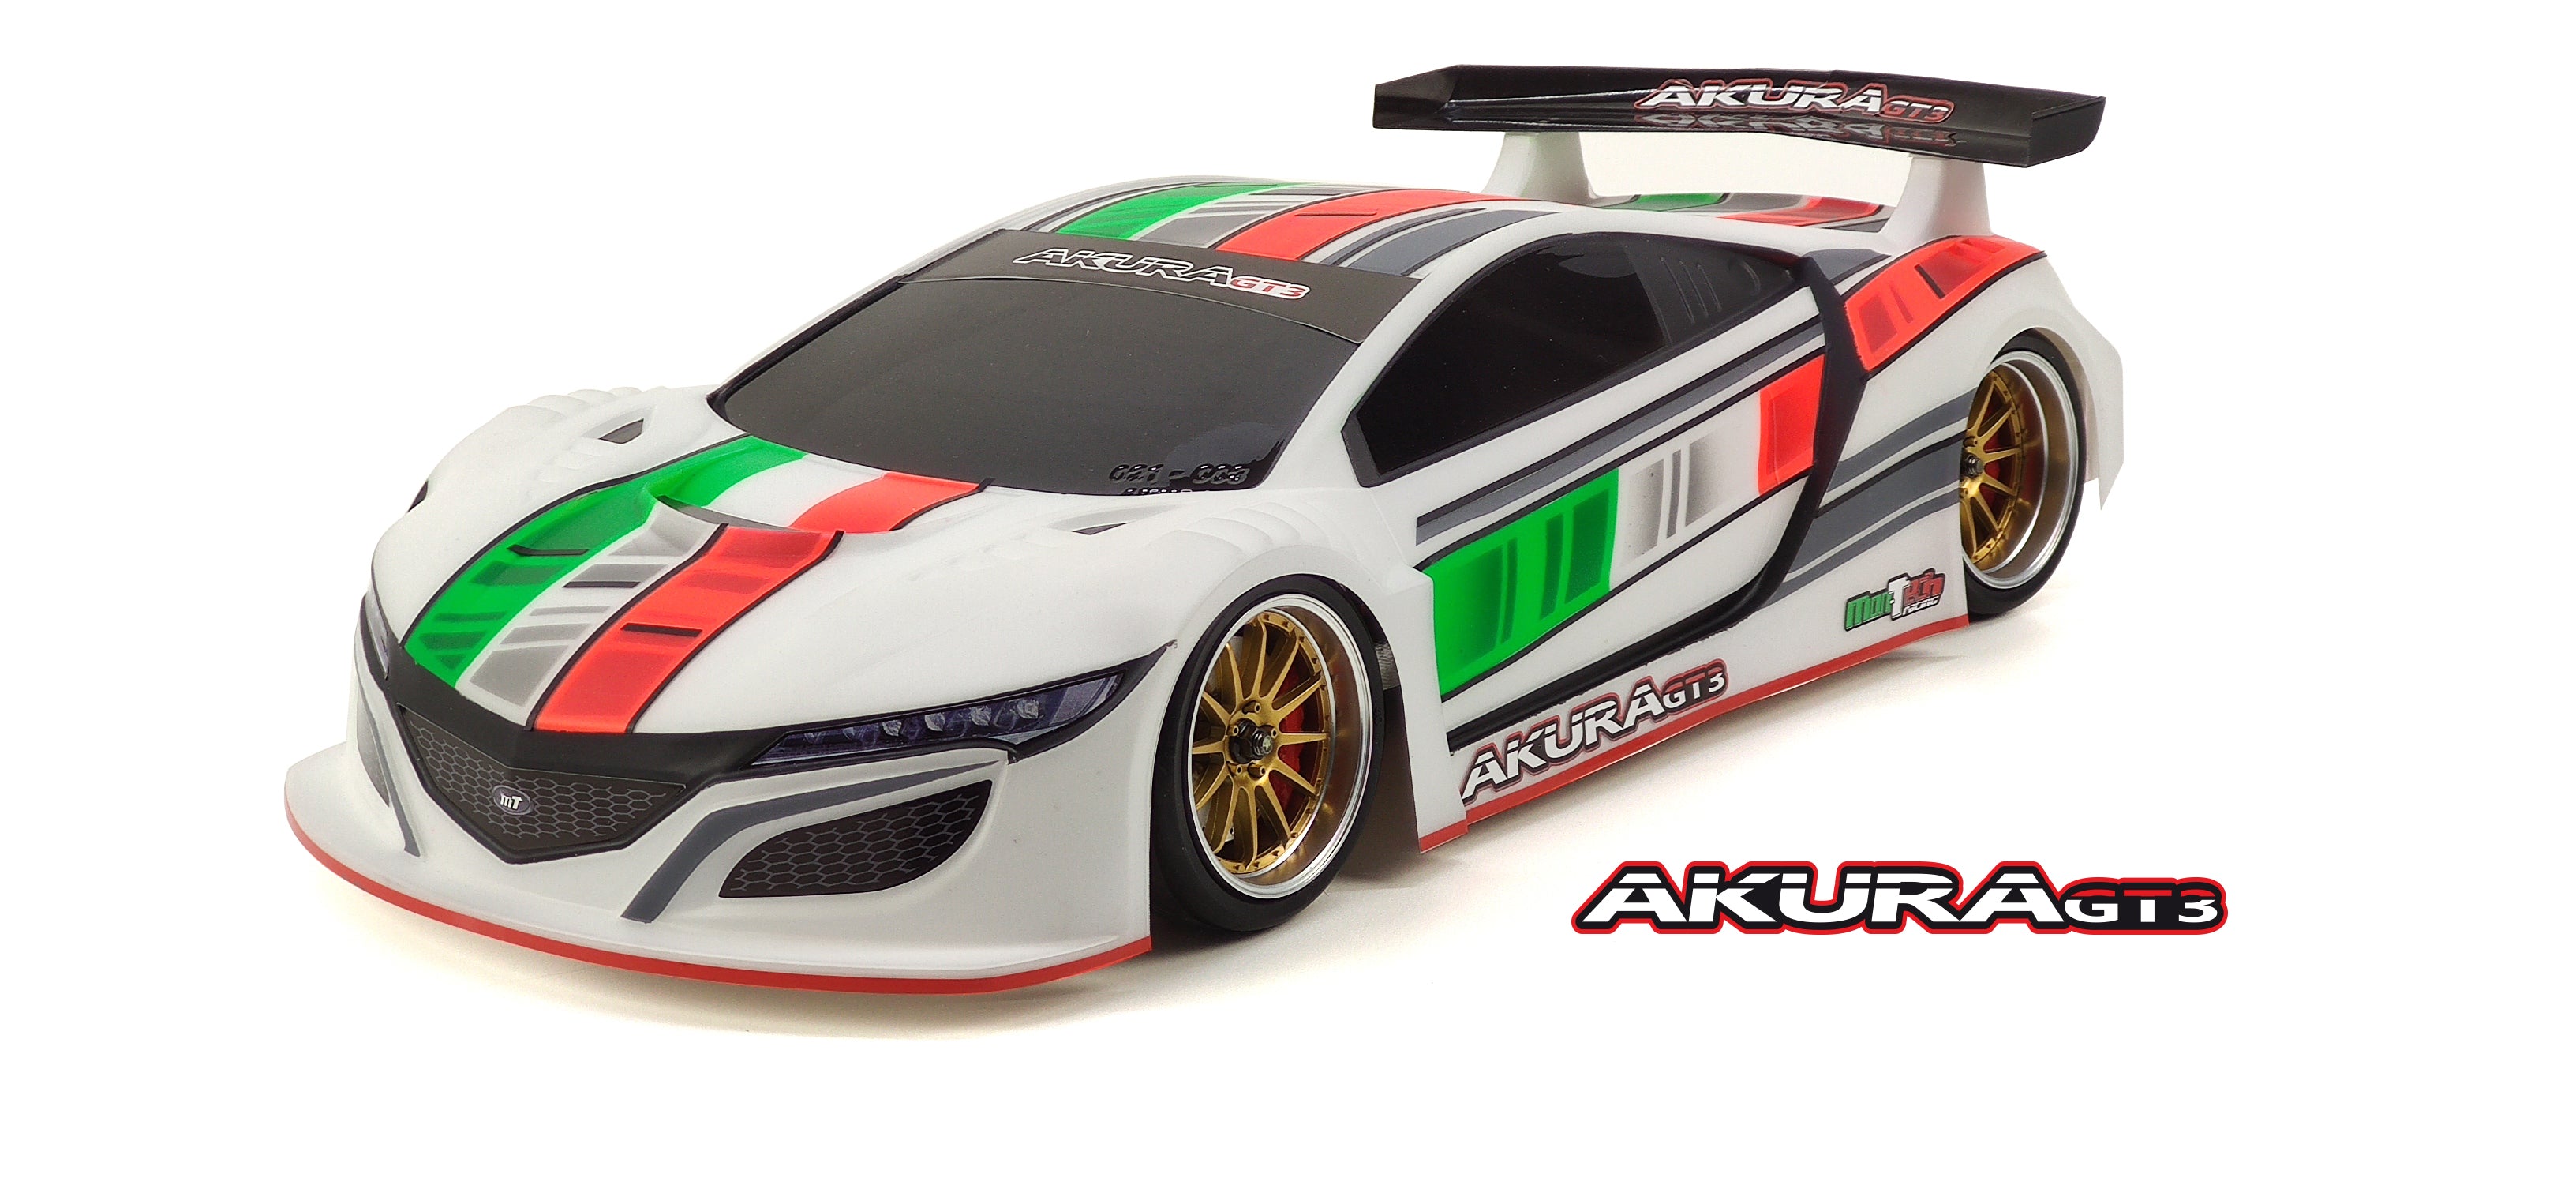 Mon-Tech Racing: Akura GT3 190mm Touring Car Body